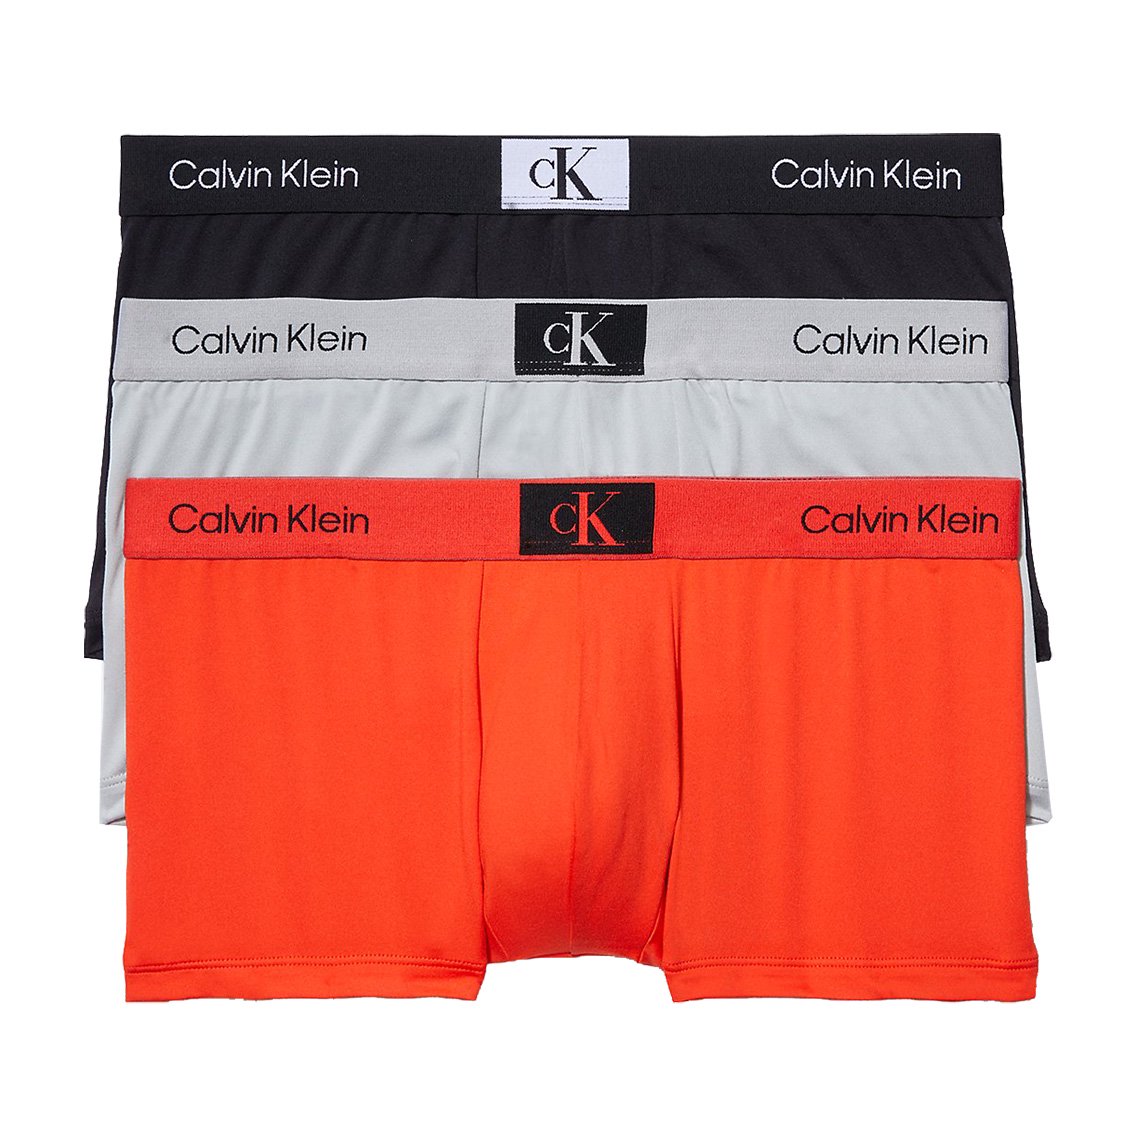 Calvin Klein(カルバンクライン)[NB3532-902]:ボクサーパンツ,男性下着